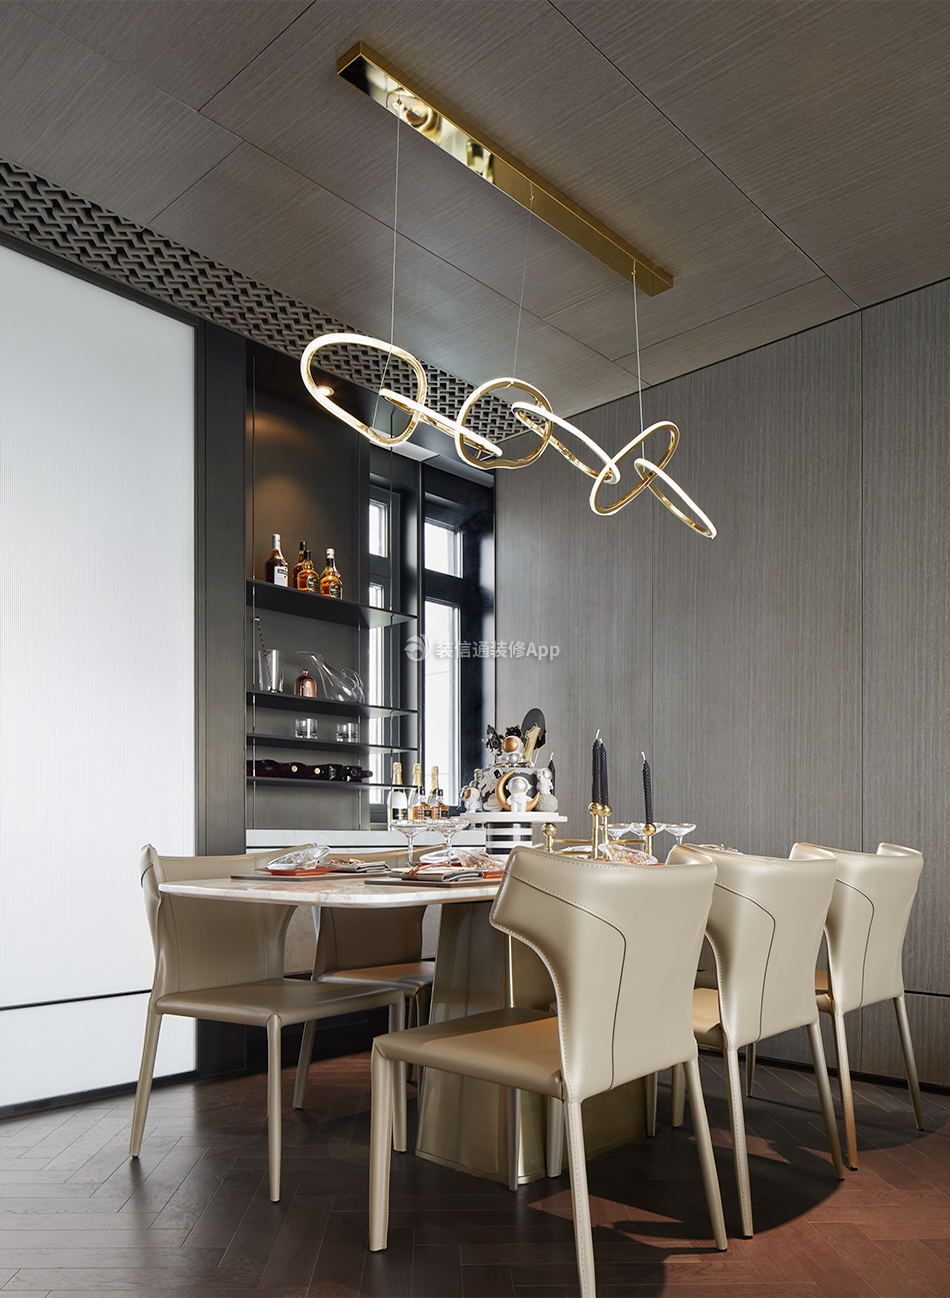 上海家庭室内餐厅灯具装修效果图